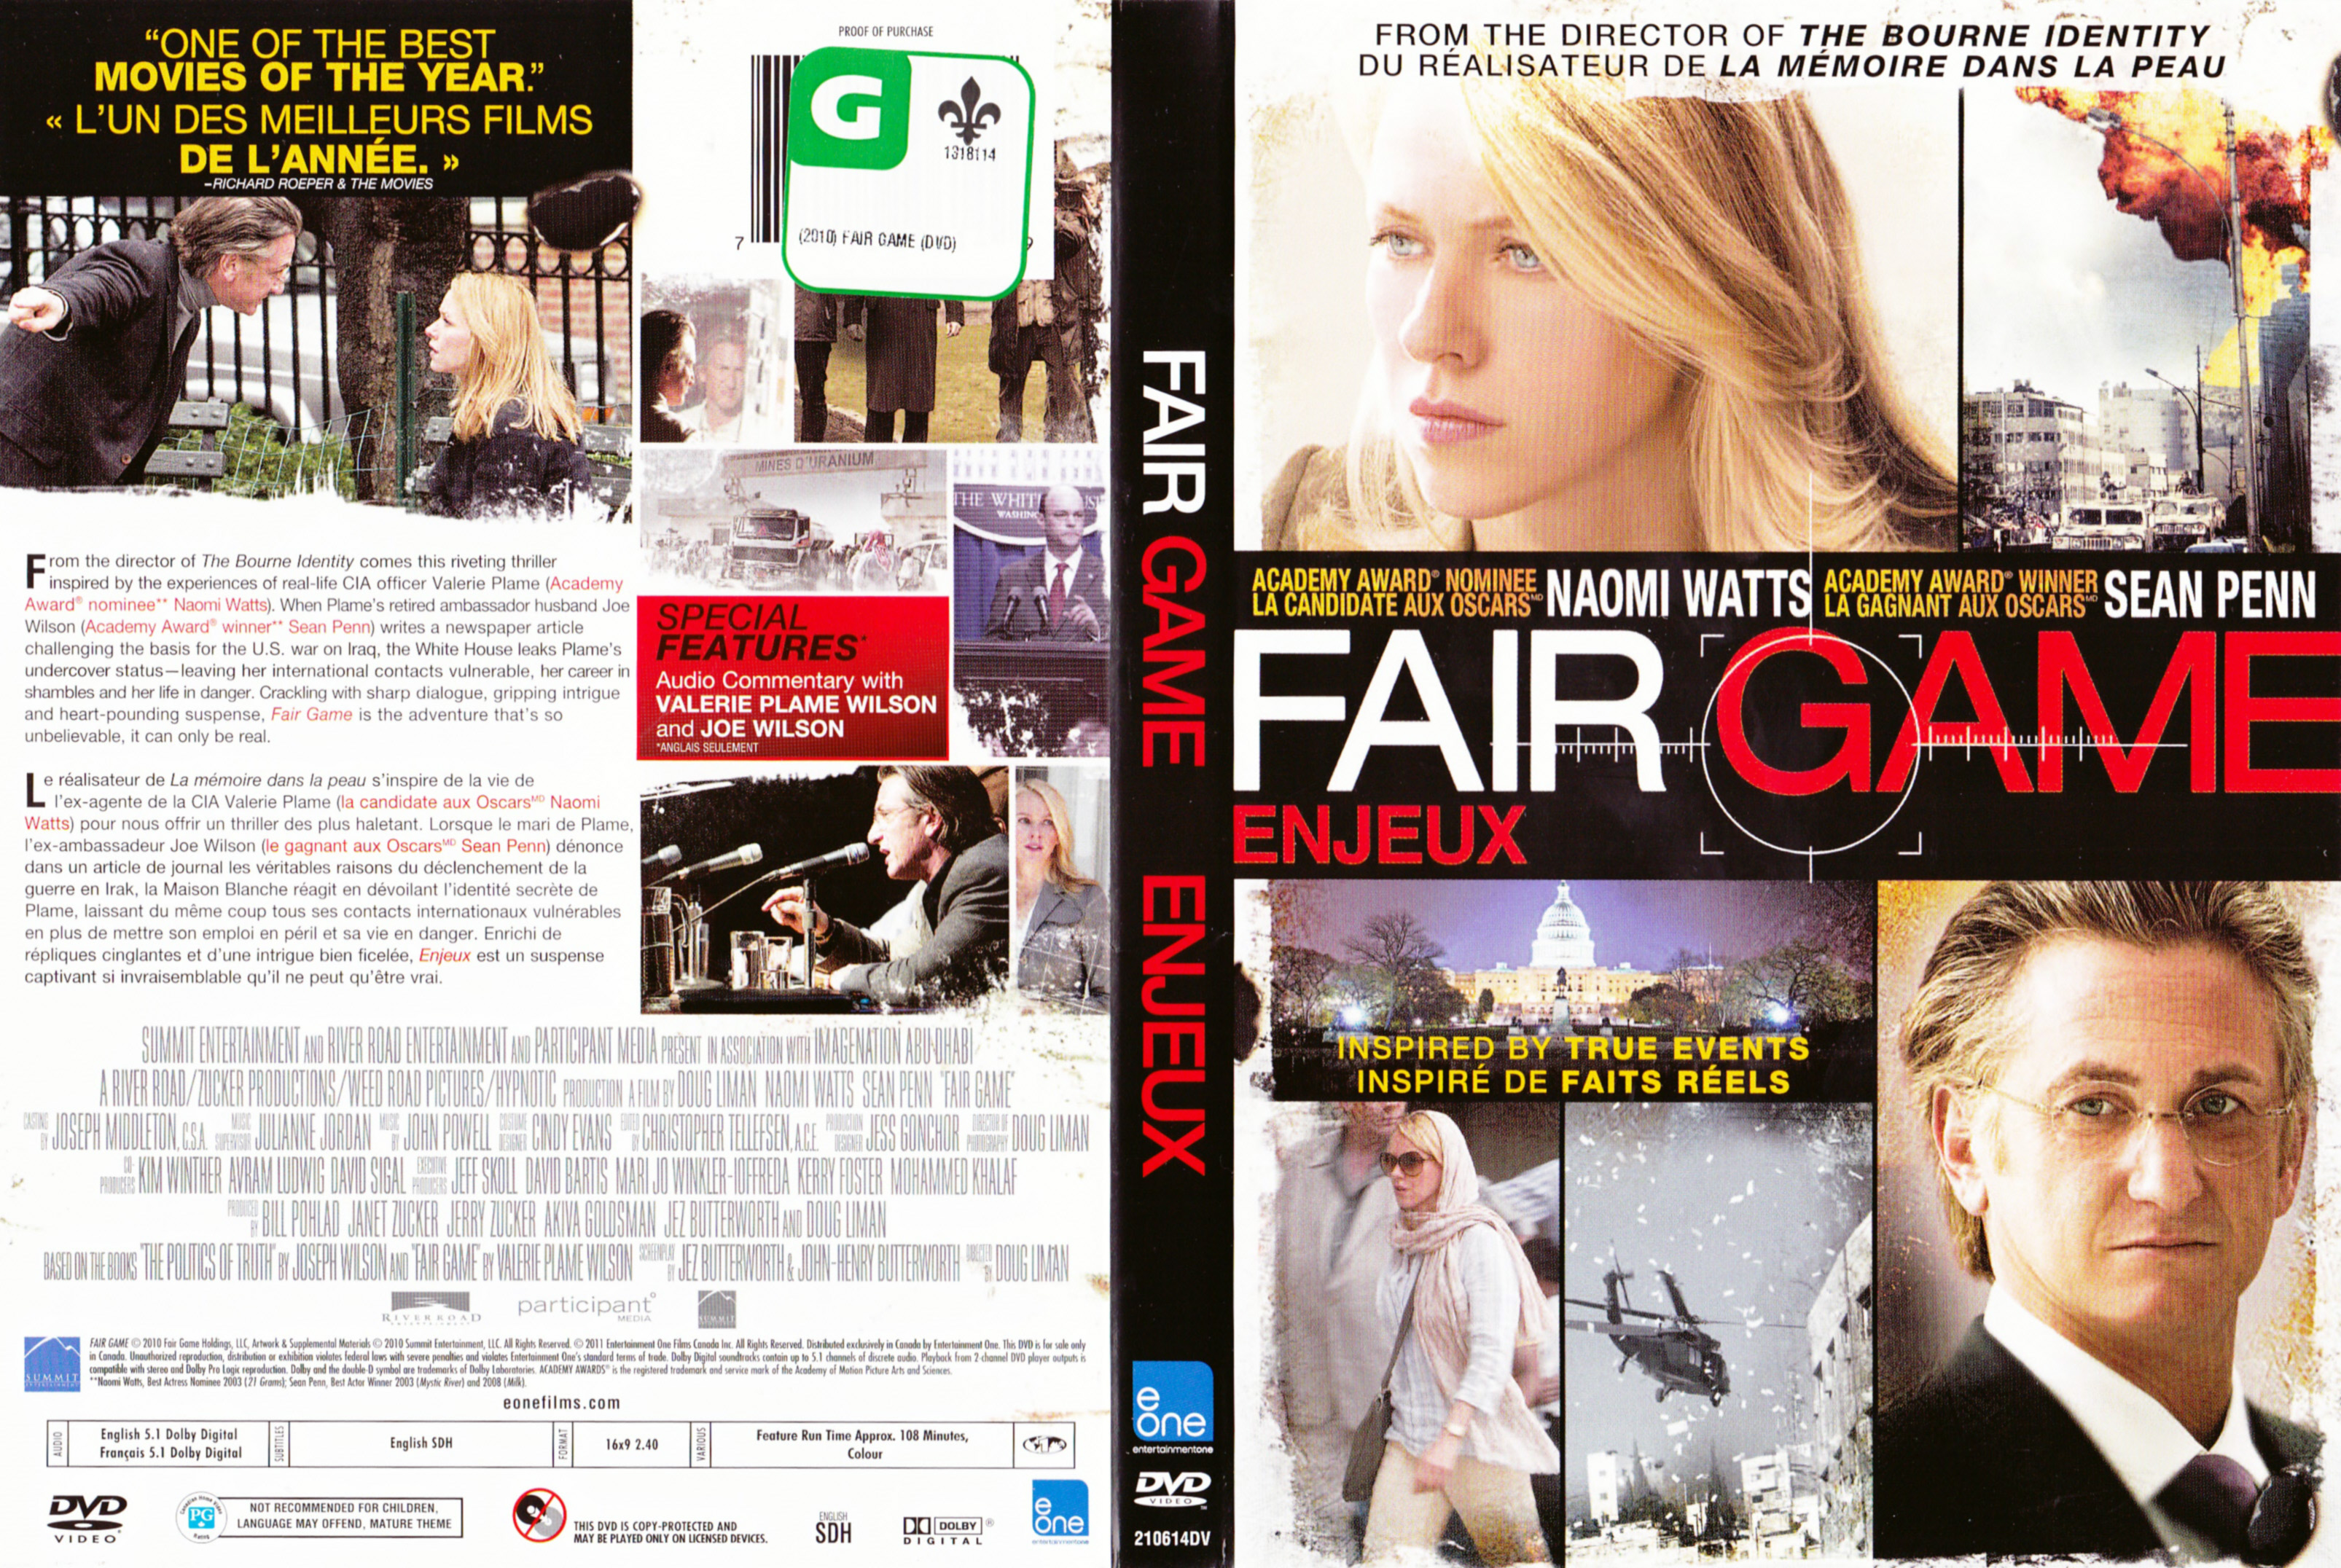 Jaquette DVD Enjeux - Fair game (Canadienne)